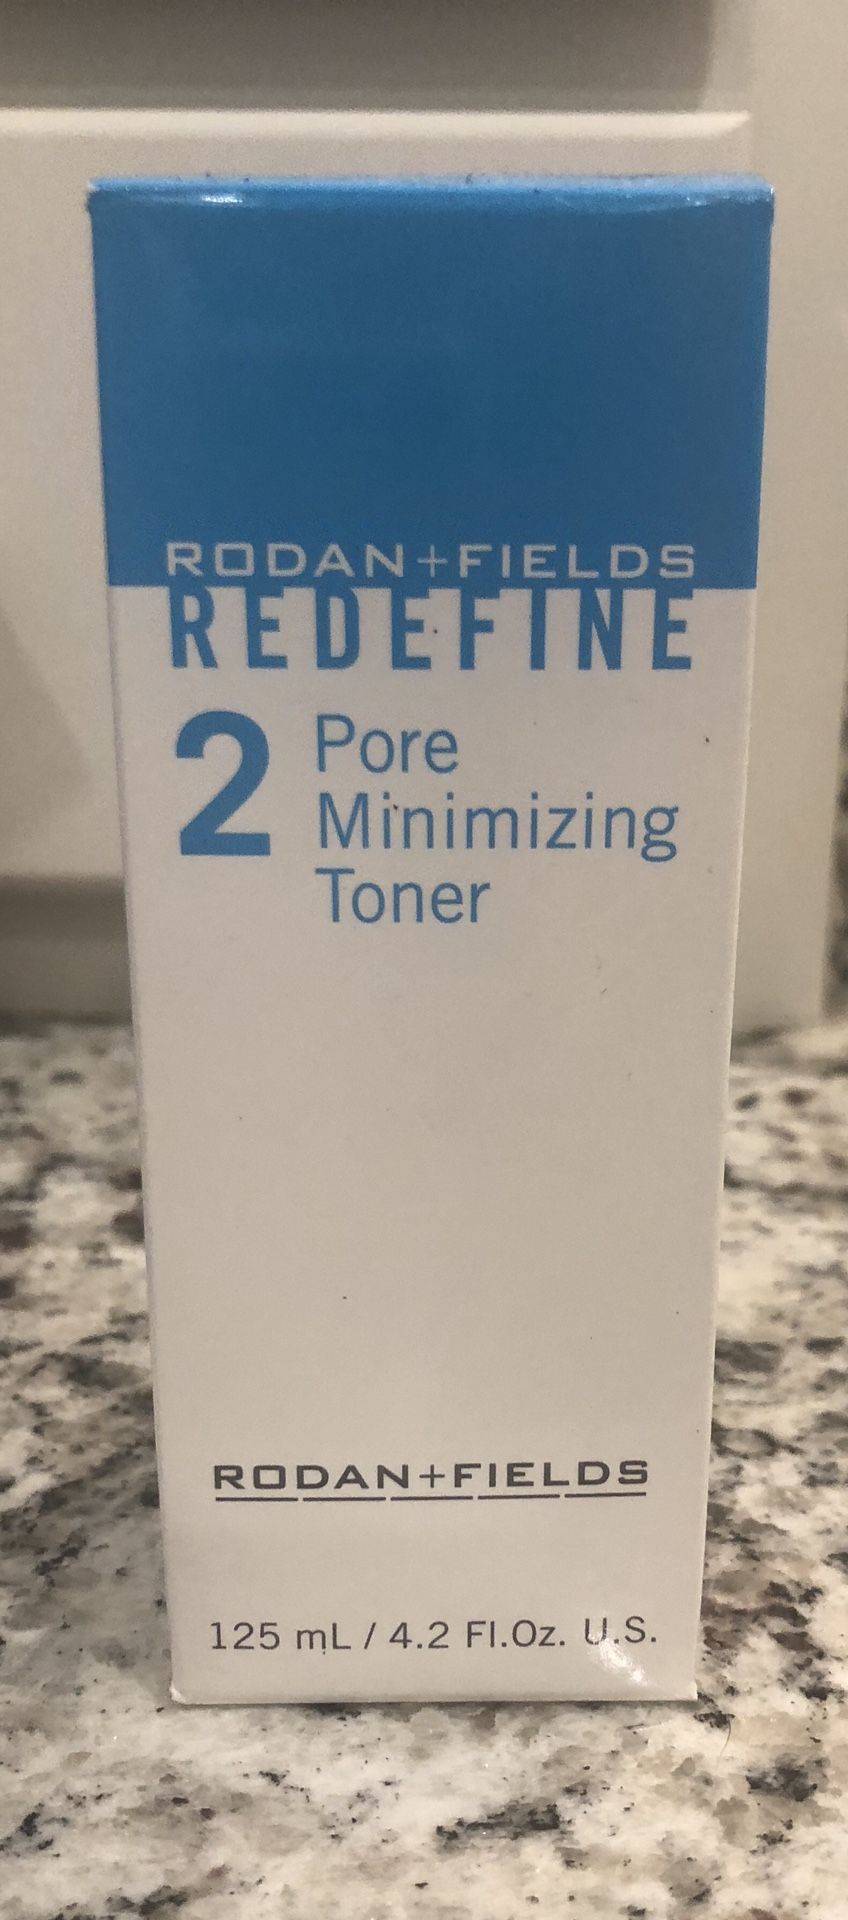 Pore Minimizing Toner from Rodan and Fields